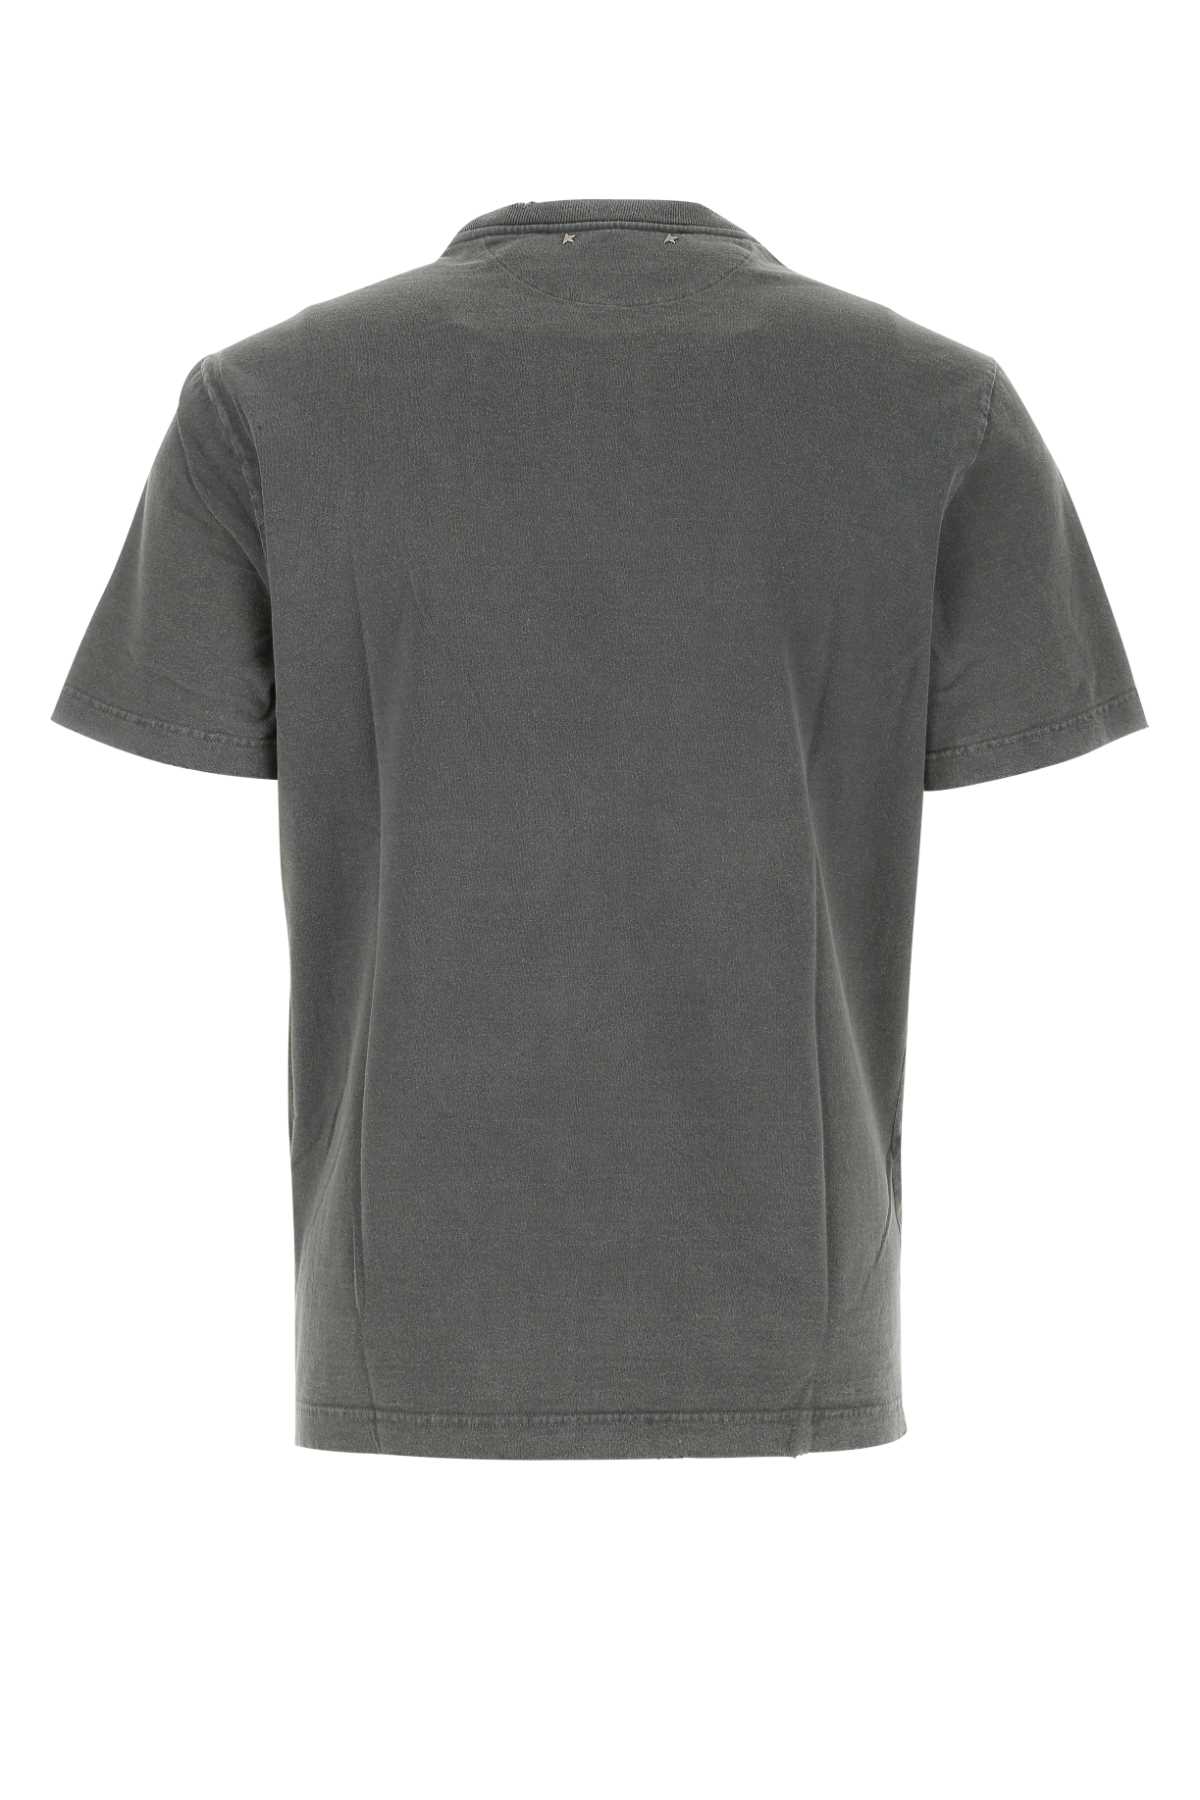 Golden Goose Dark Grey Cotton T-shirt In 60318